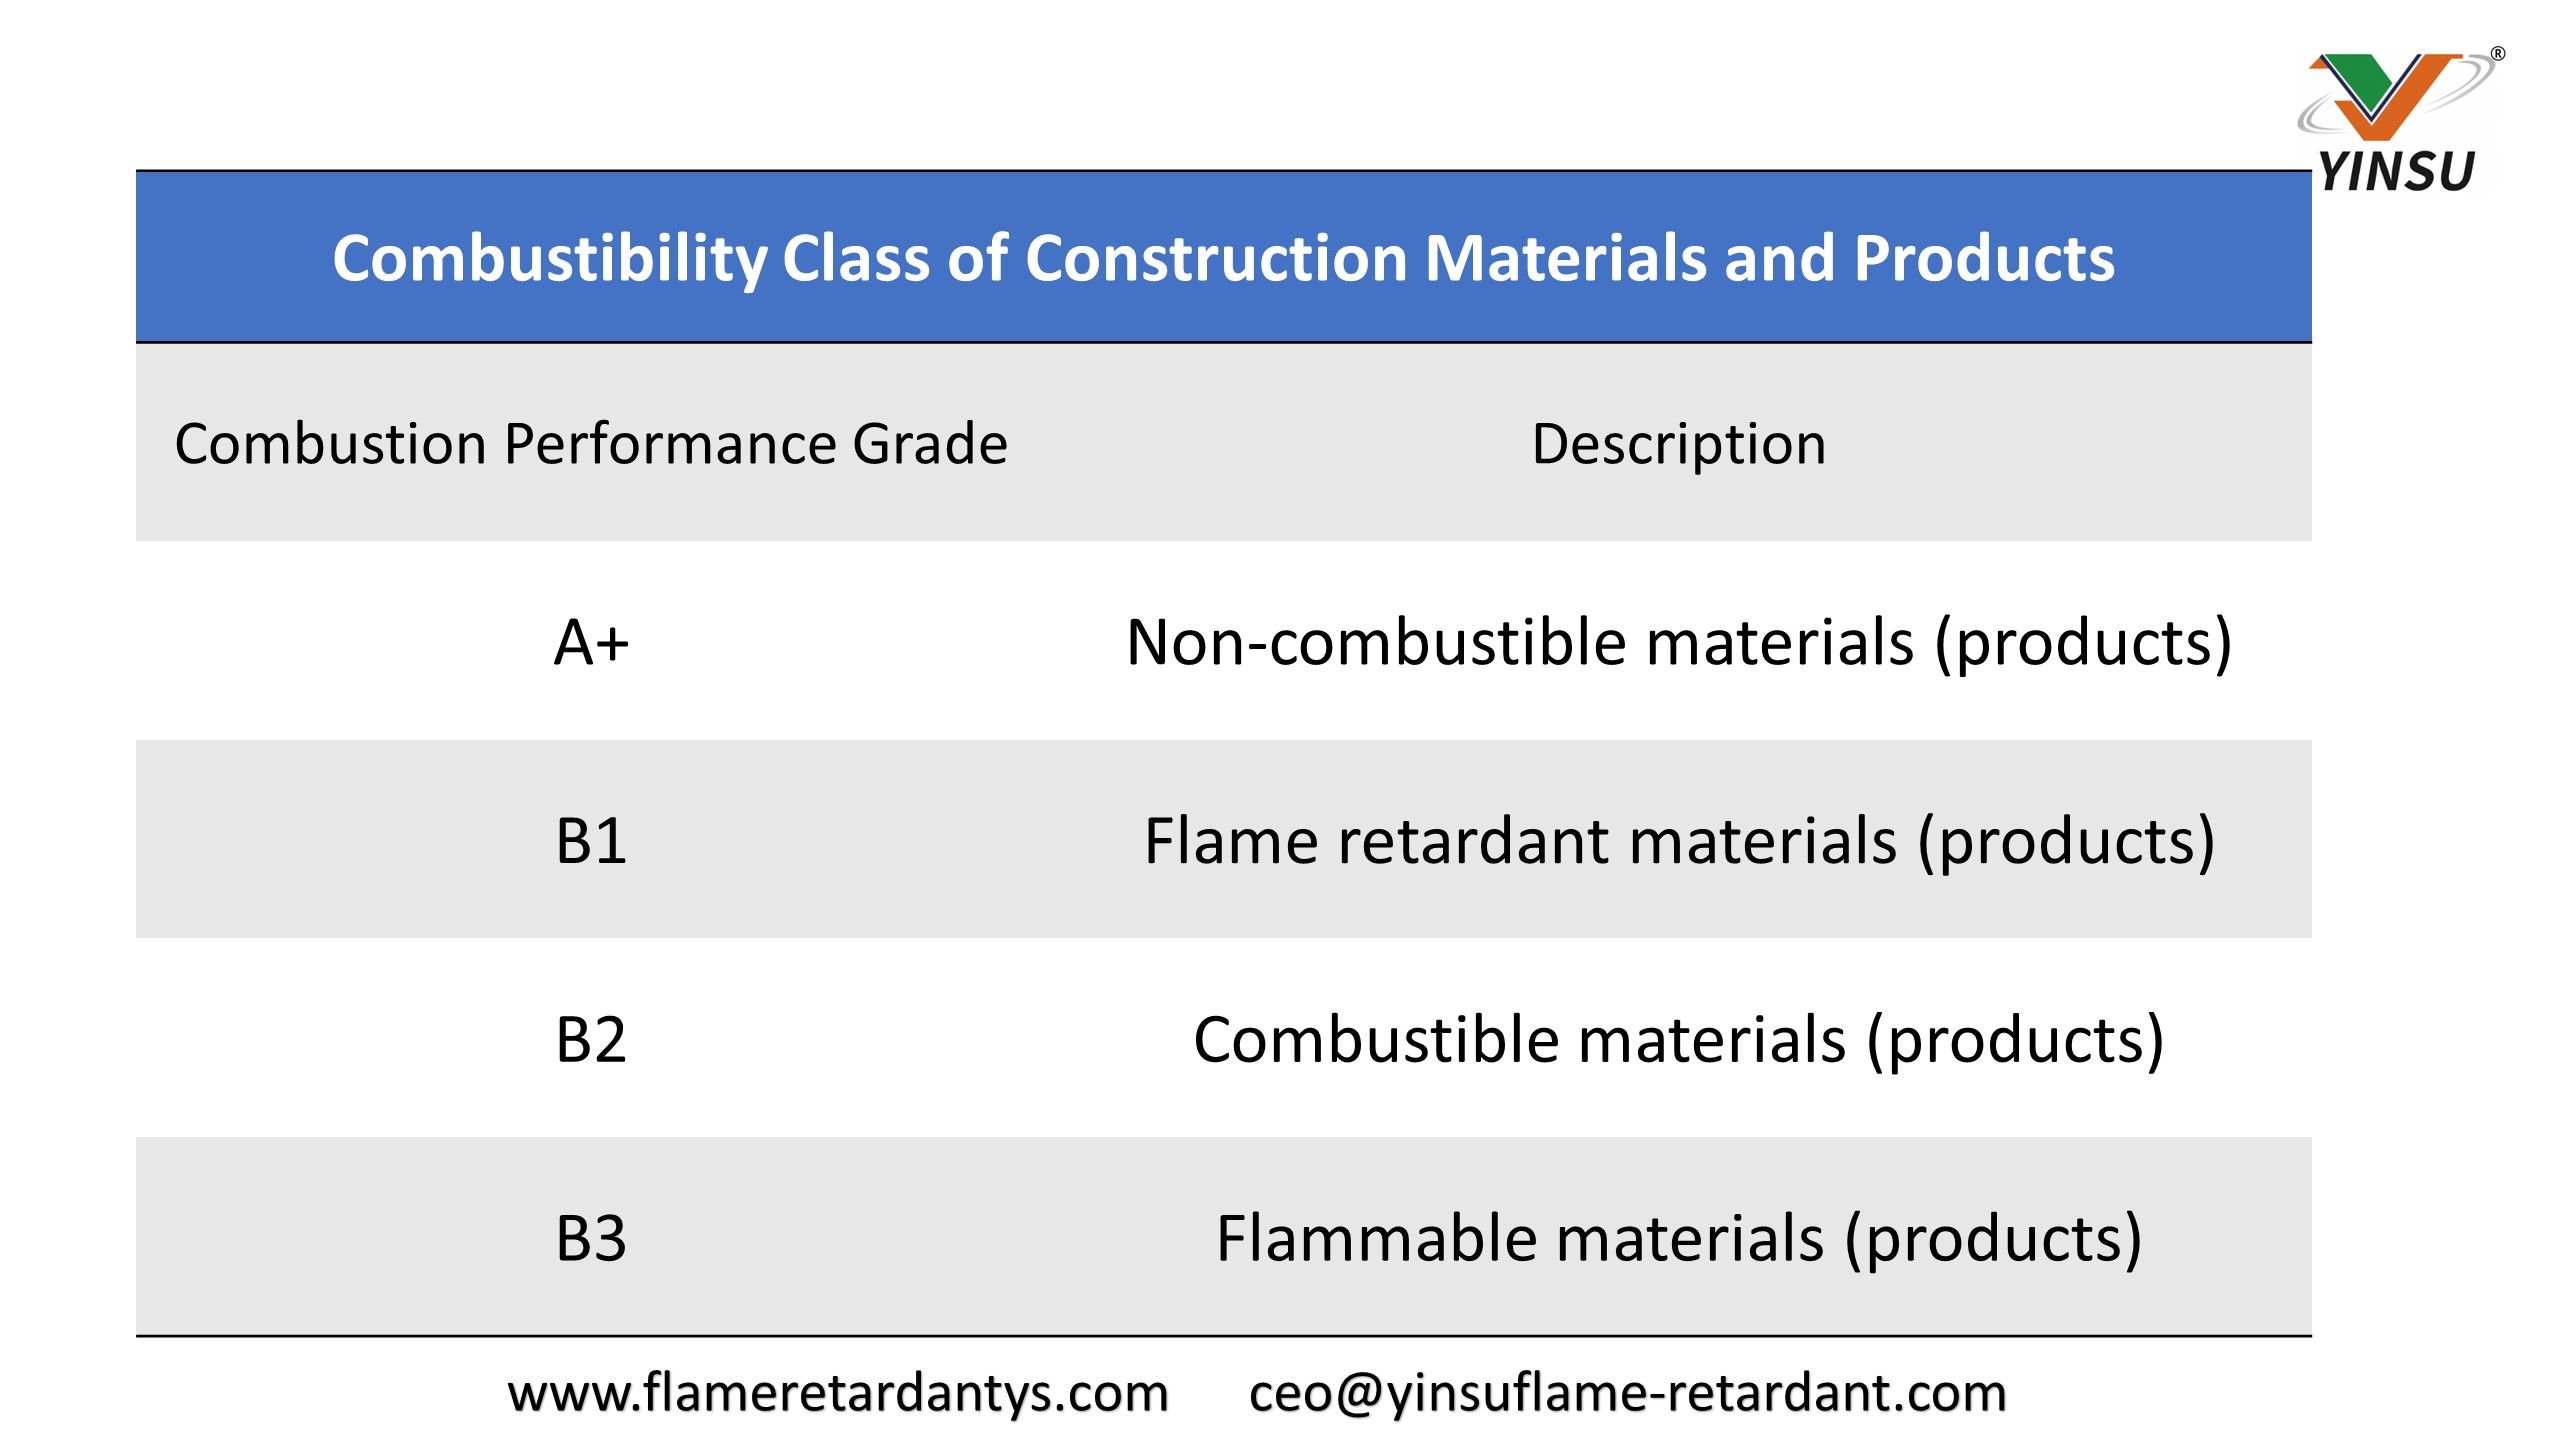 8.13 Clase de combustibilidad de materiales y productos de construcción